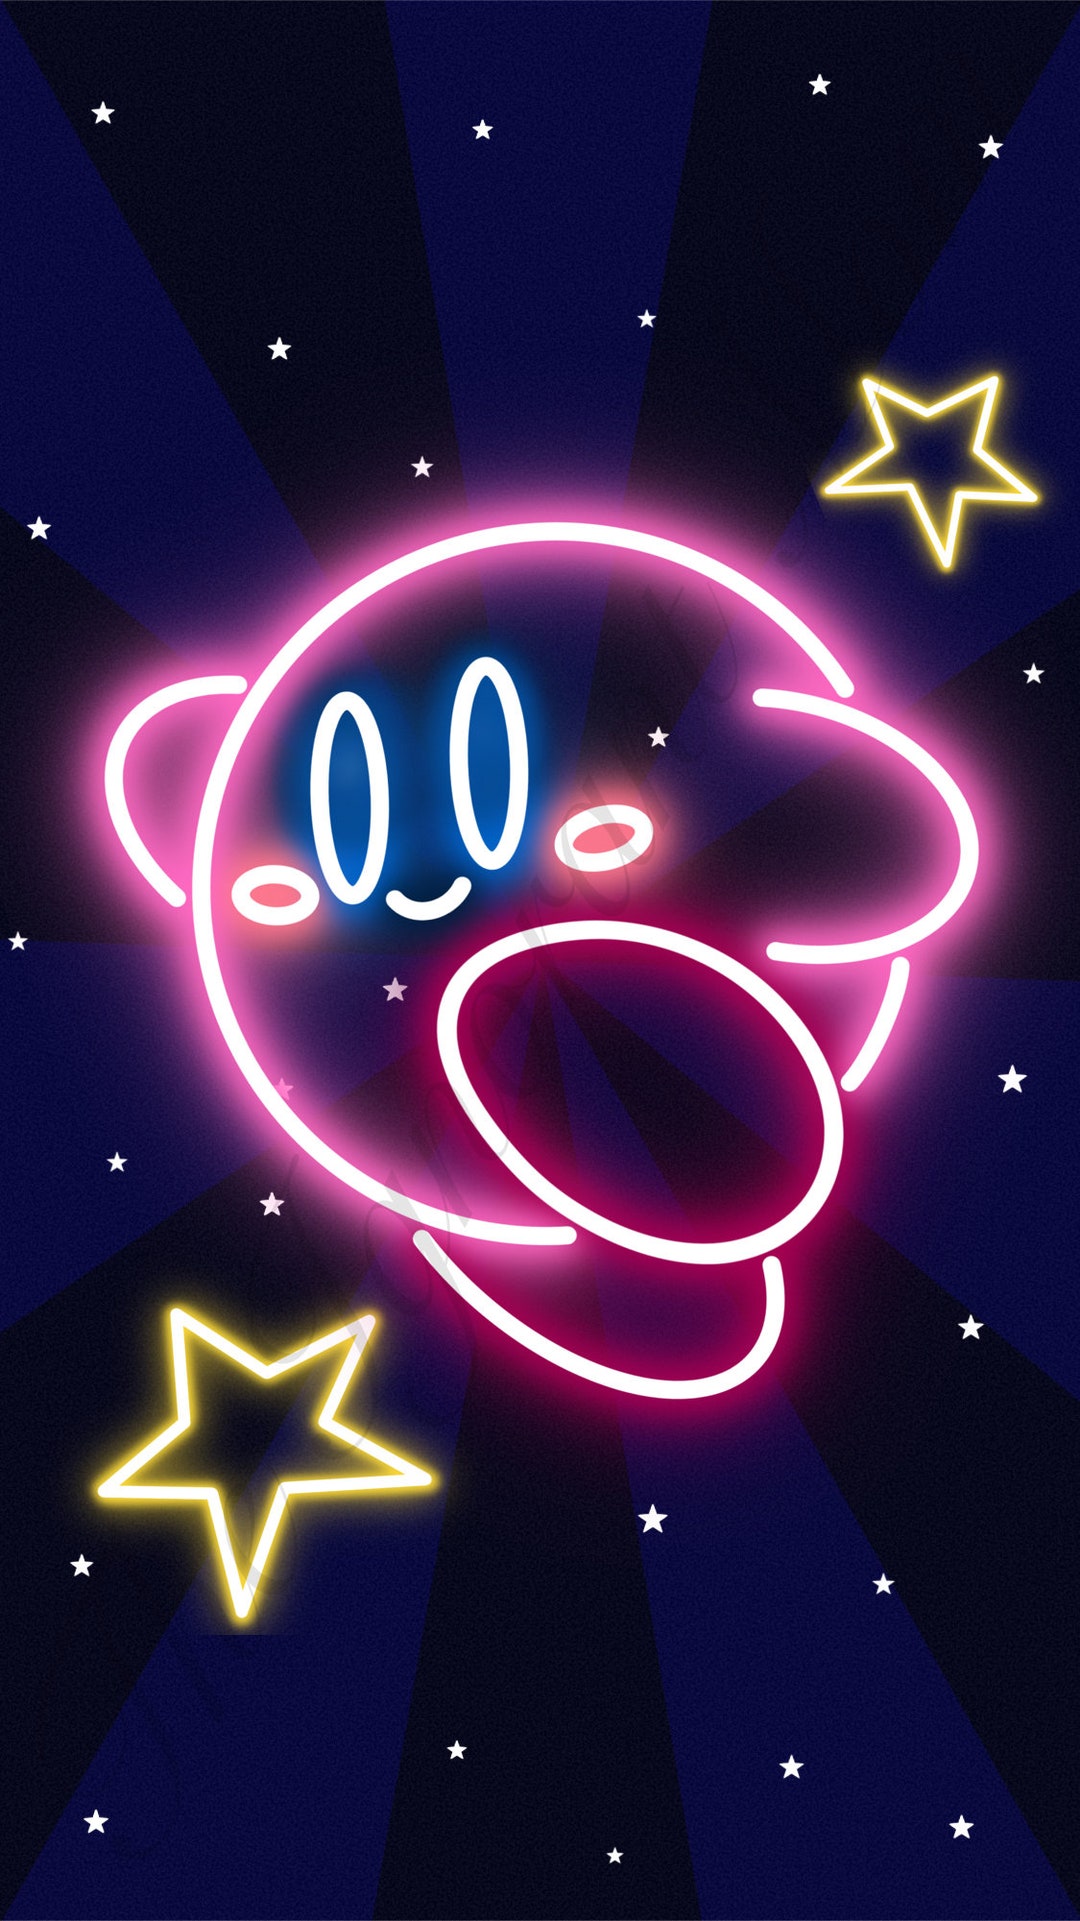 Tận hưởng không gian sống động và hoàn toàn mới với hình nền điện tử của Kirby với các đèn neon sặc sỡ. Điều này sẽ tạo cho điện thoại hay máy tính của bạn một diện mạo khác biệt và rực rỡ đến ngạc nhiên. Hãy xem ảnh liên quan đến “Kirby neon lights” để trải nghiệm điều này.